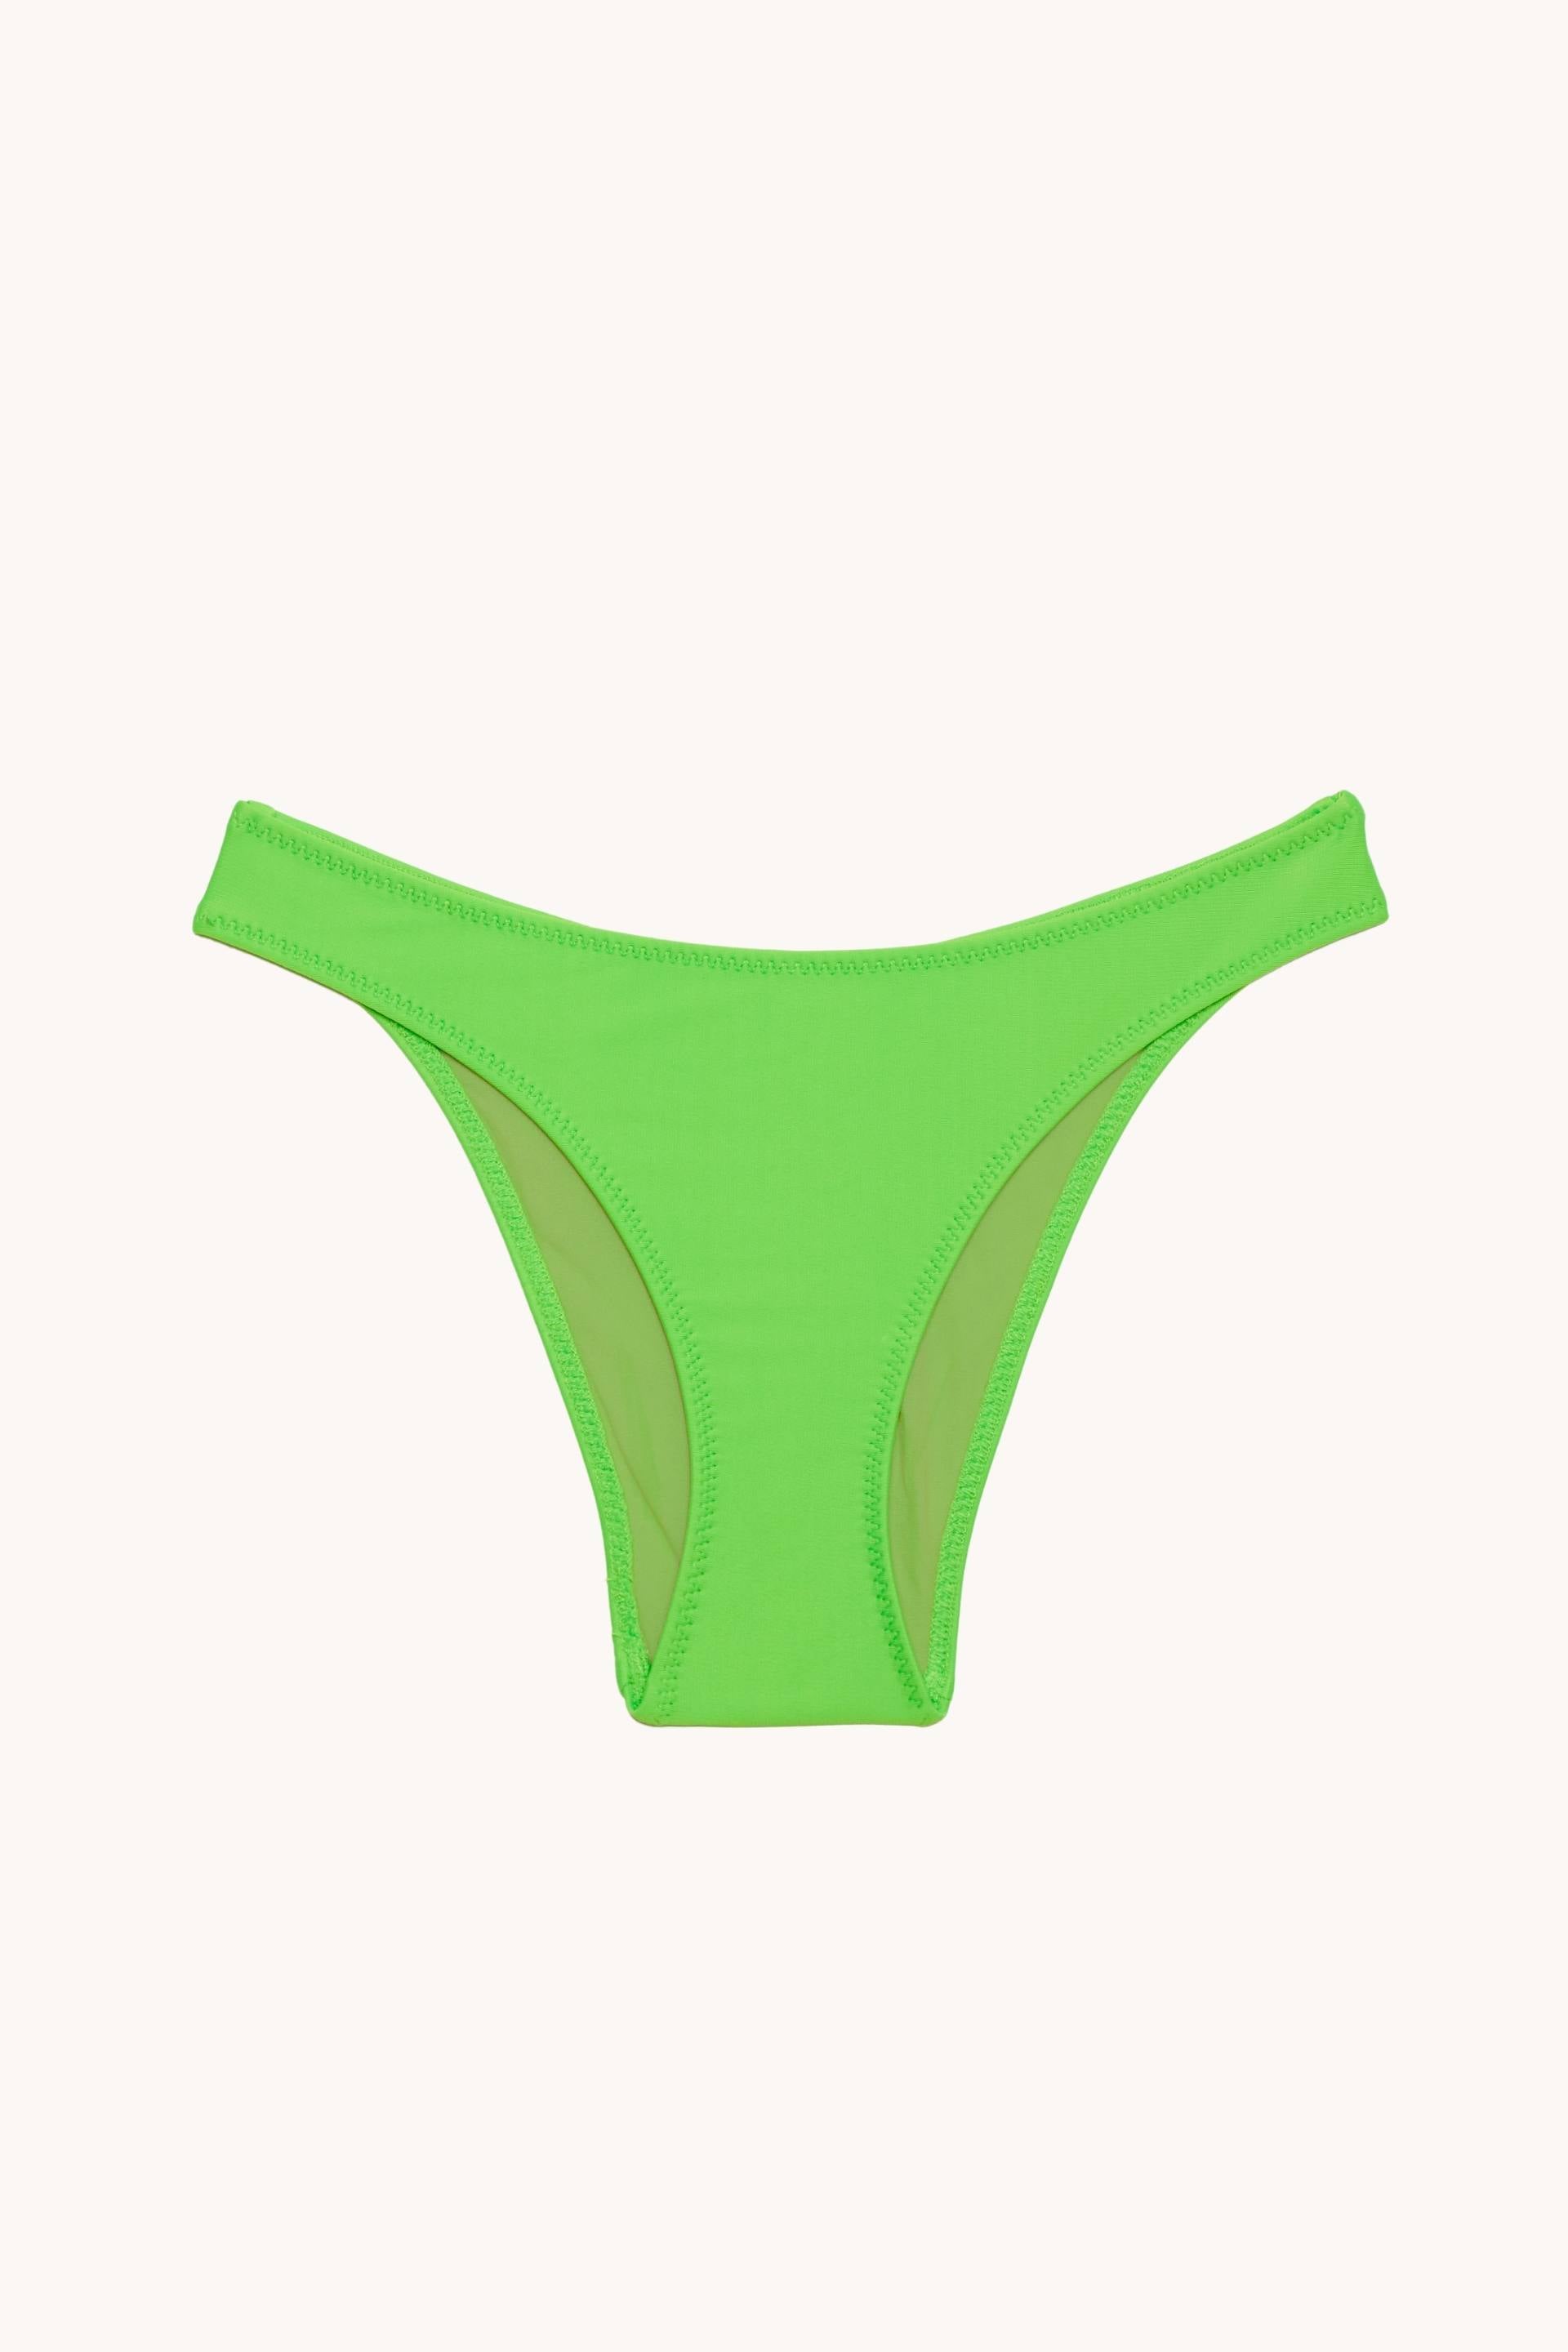 Carla Bralette Bikini Top in Glowing Green Fluo - ECONYL